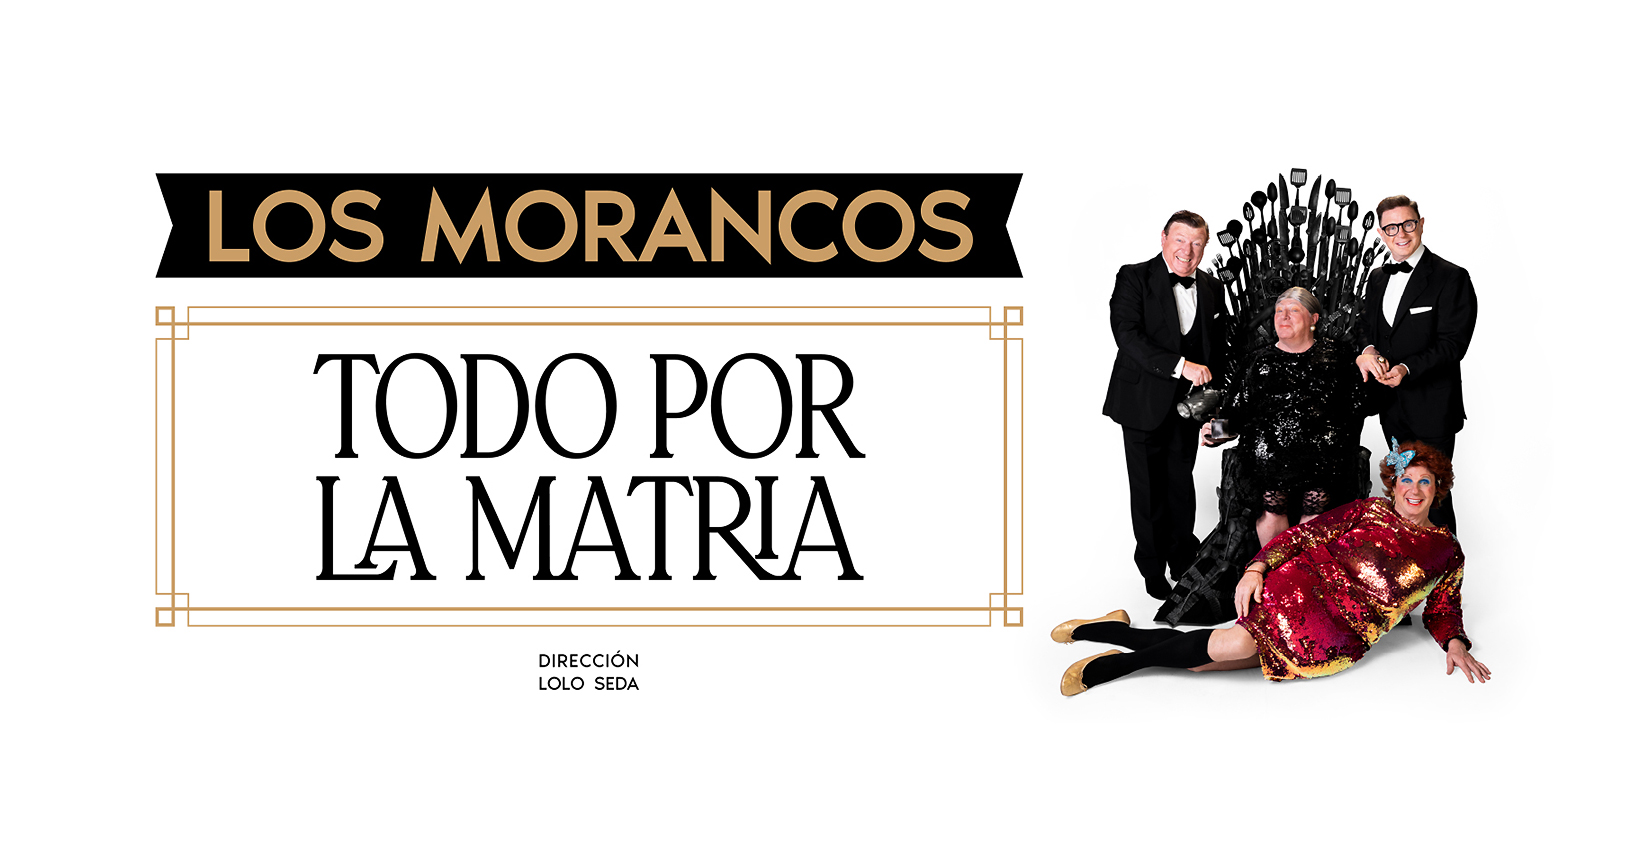 Los Morancos regresan a Valencia con “Todo por la matria”